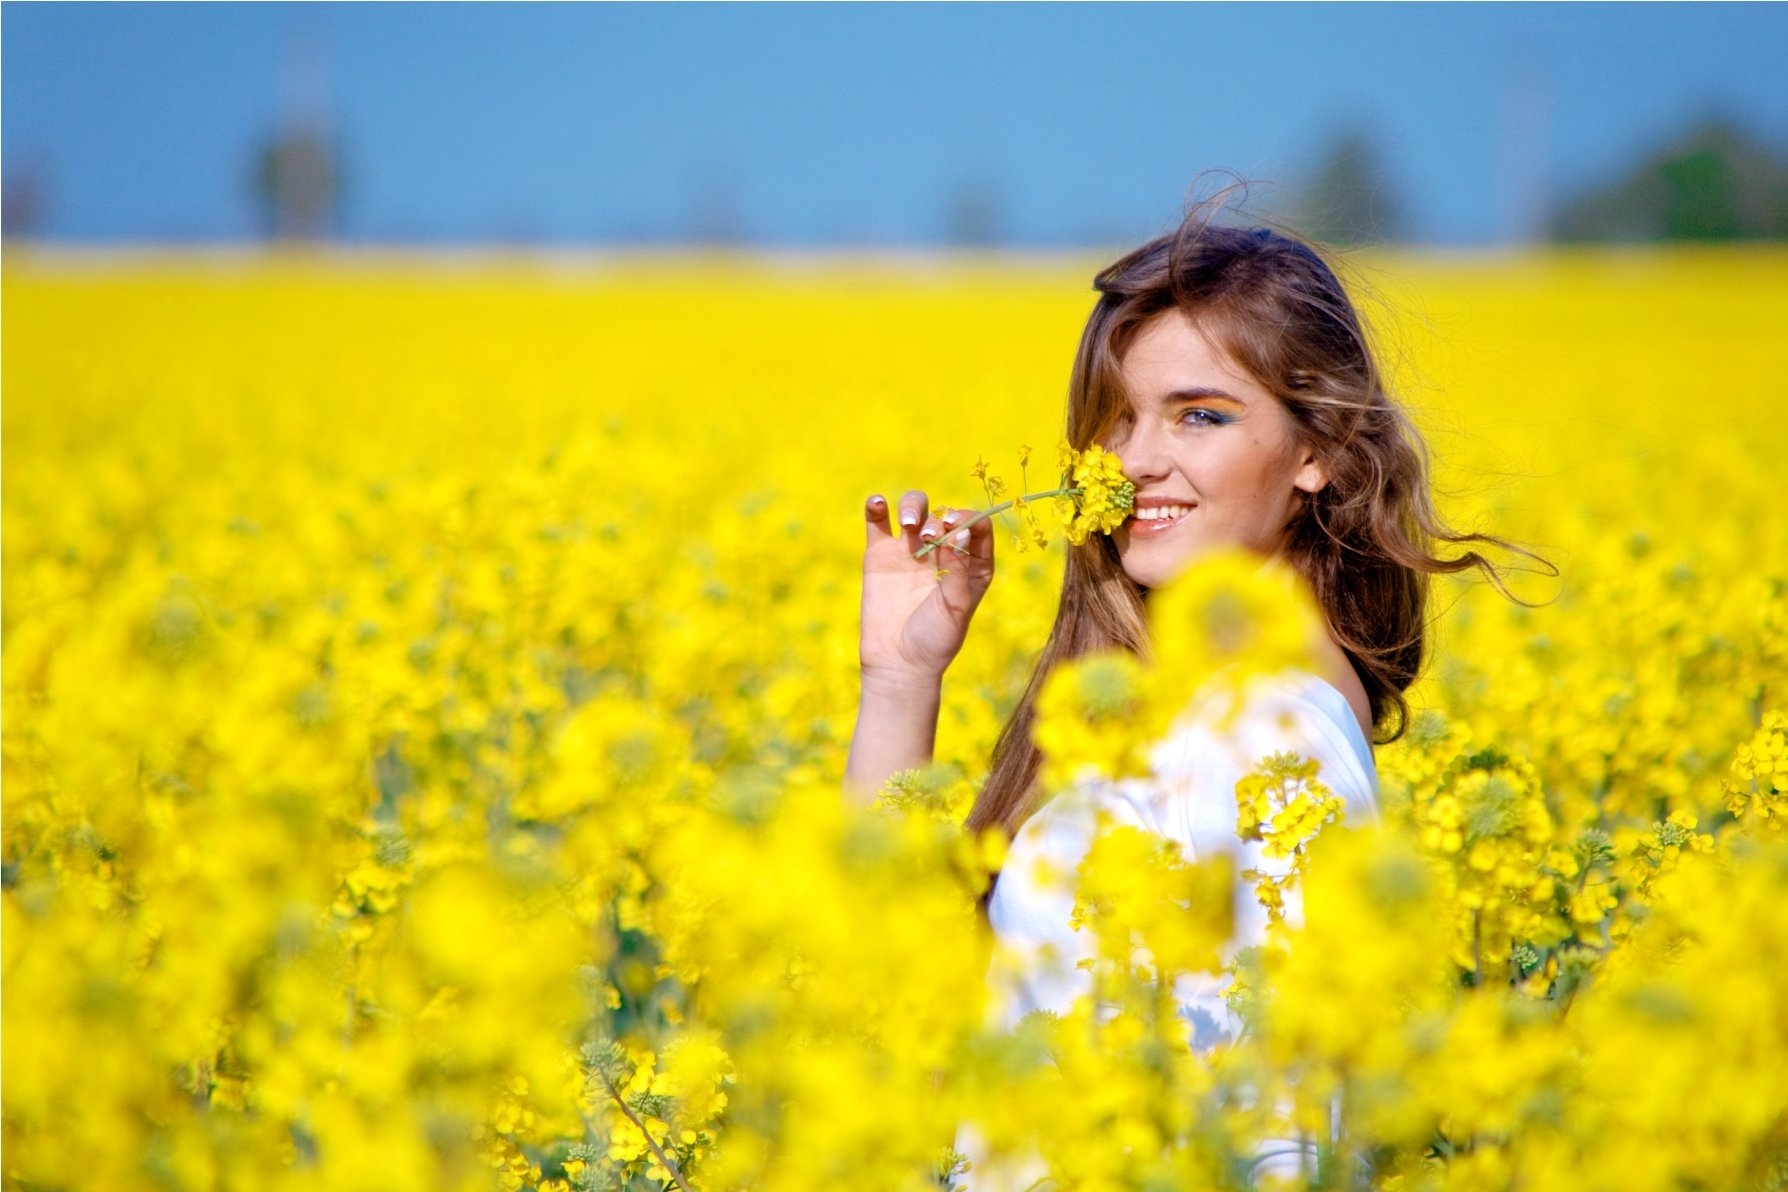 Радости беспечной. Счастливая женщина. Фотосессия в желтом цвете. Счастливая девушка. Фотосессия в желтом поле.